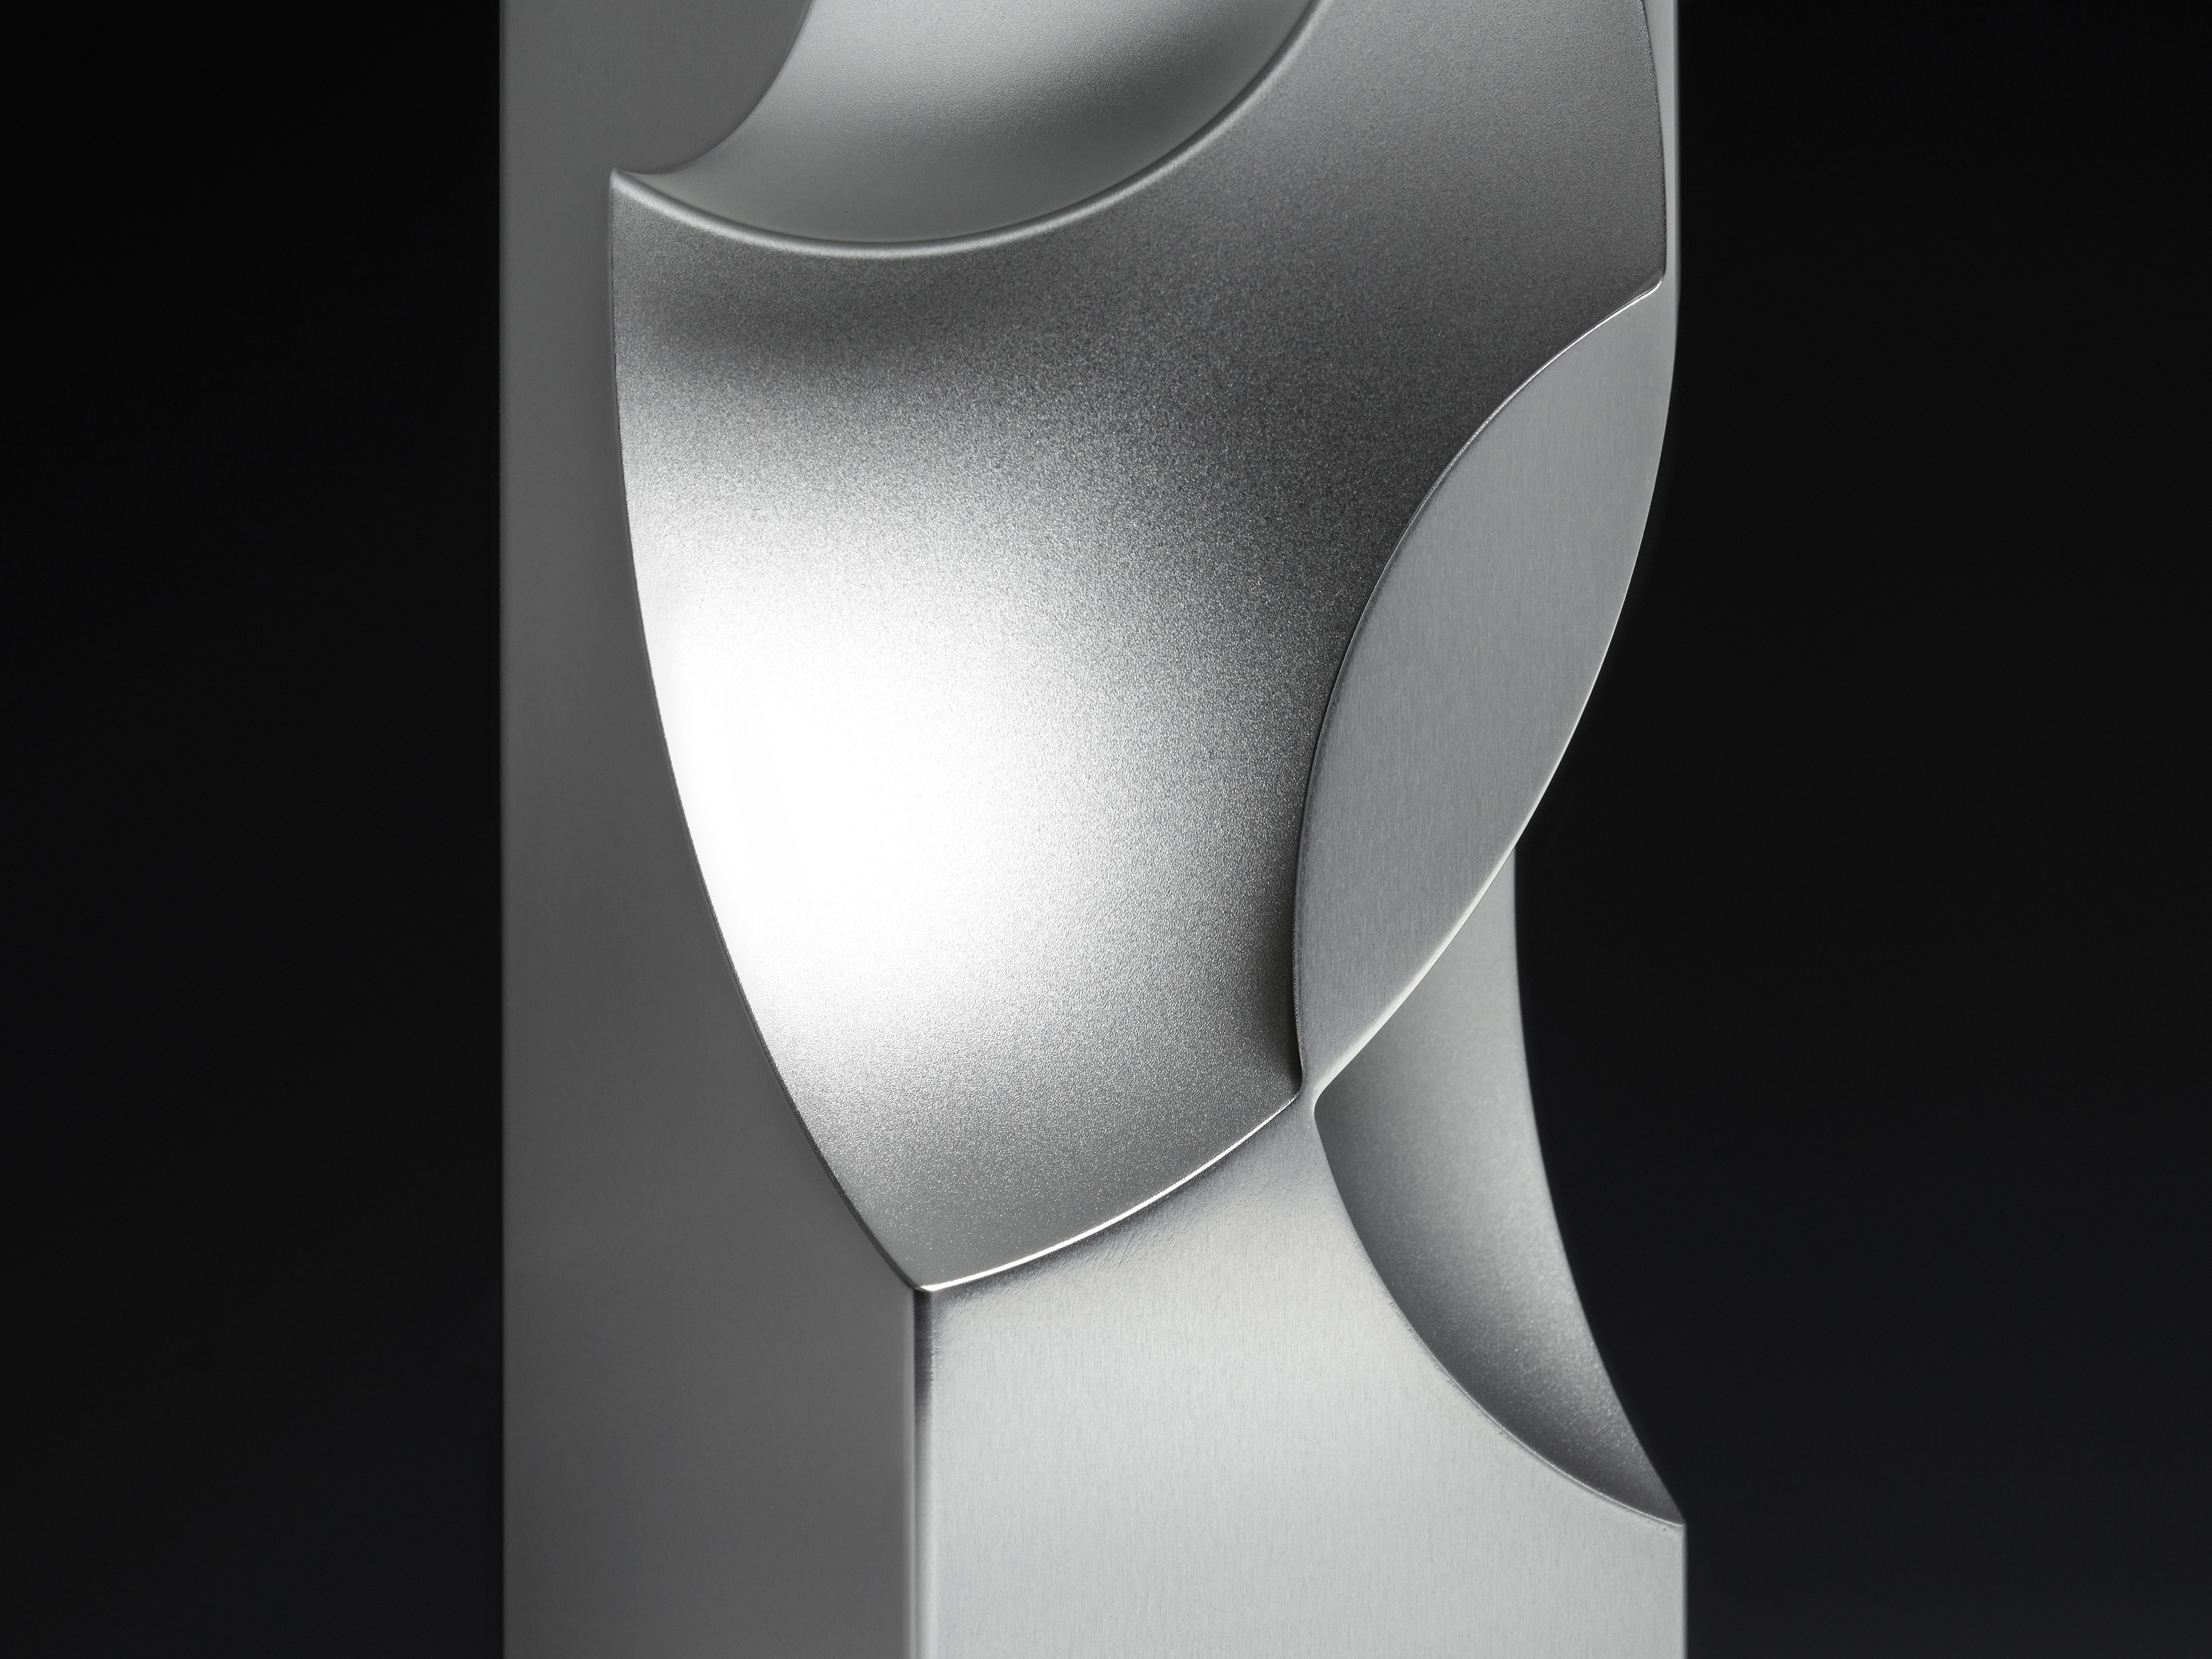 LG Guggenheim Award 2023 - Physical Award